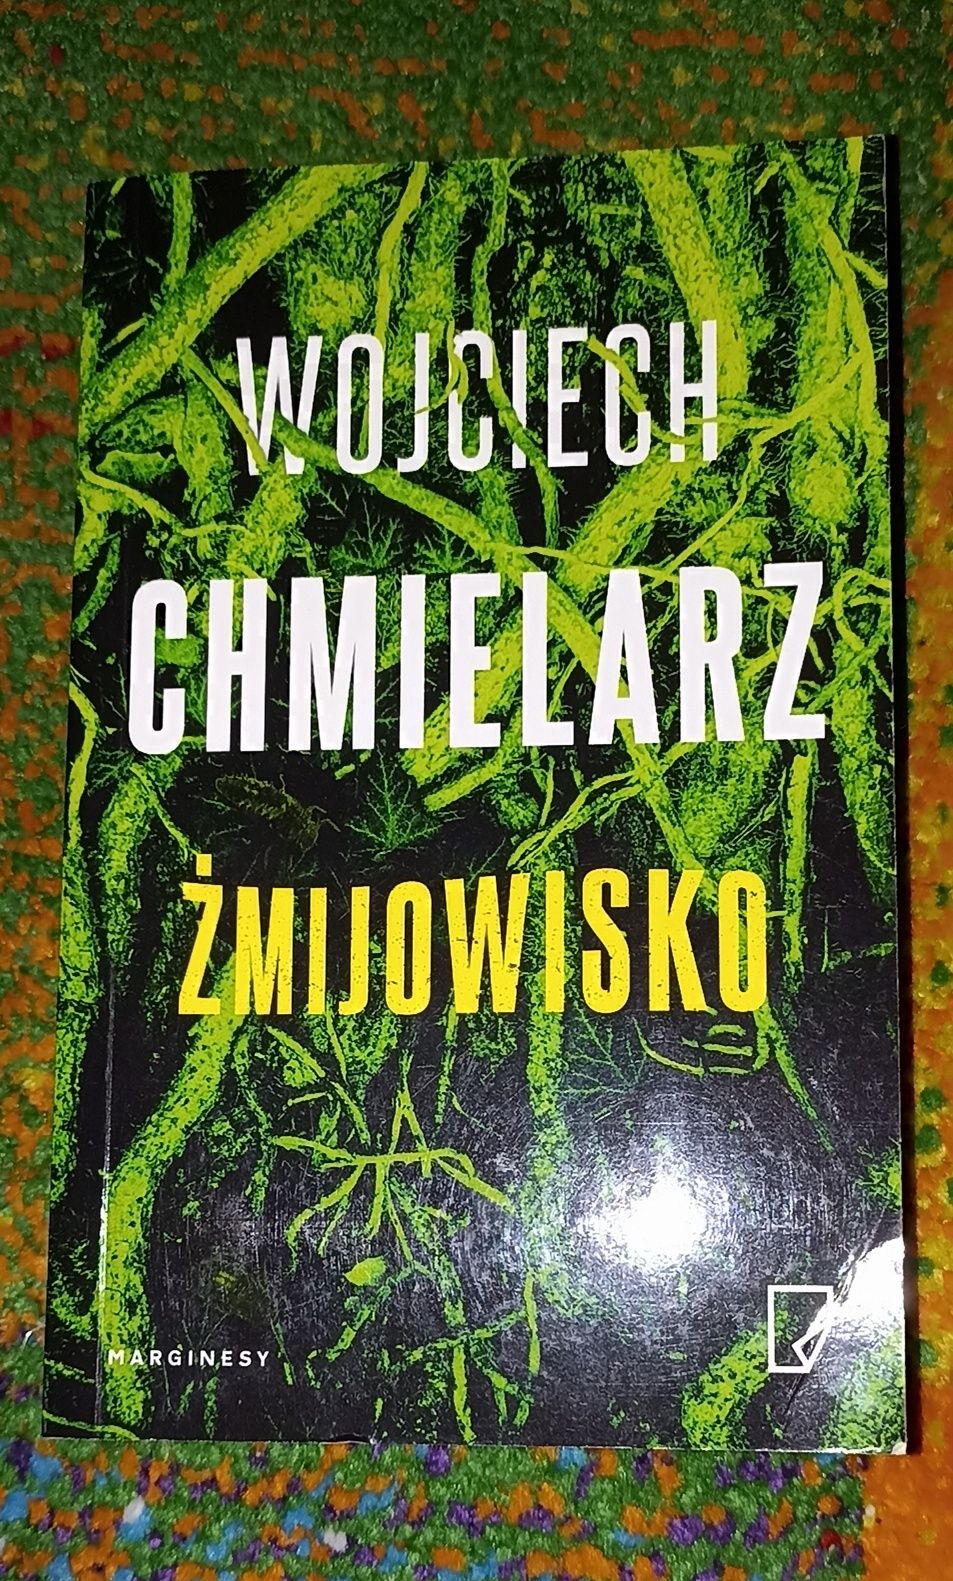 Wojciech Chmielarz Żmijowisko